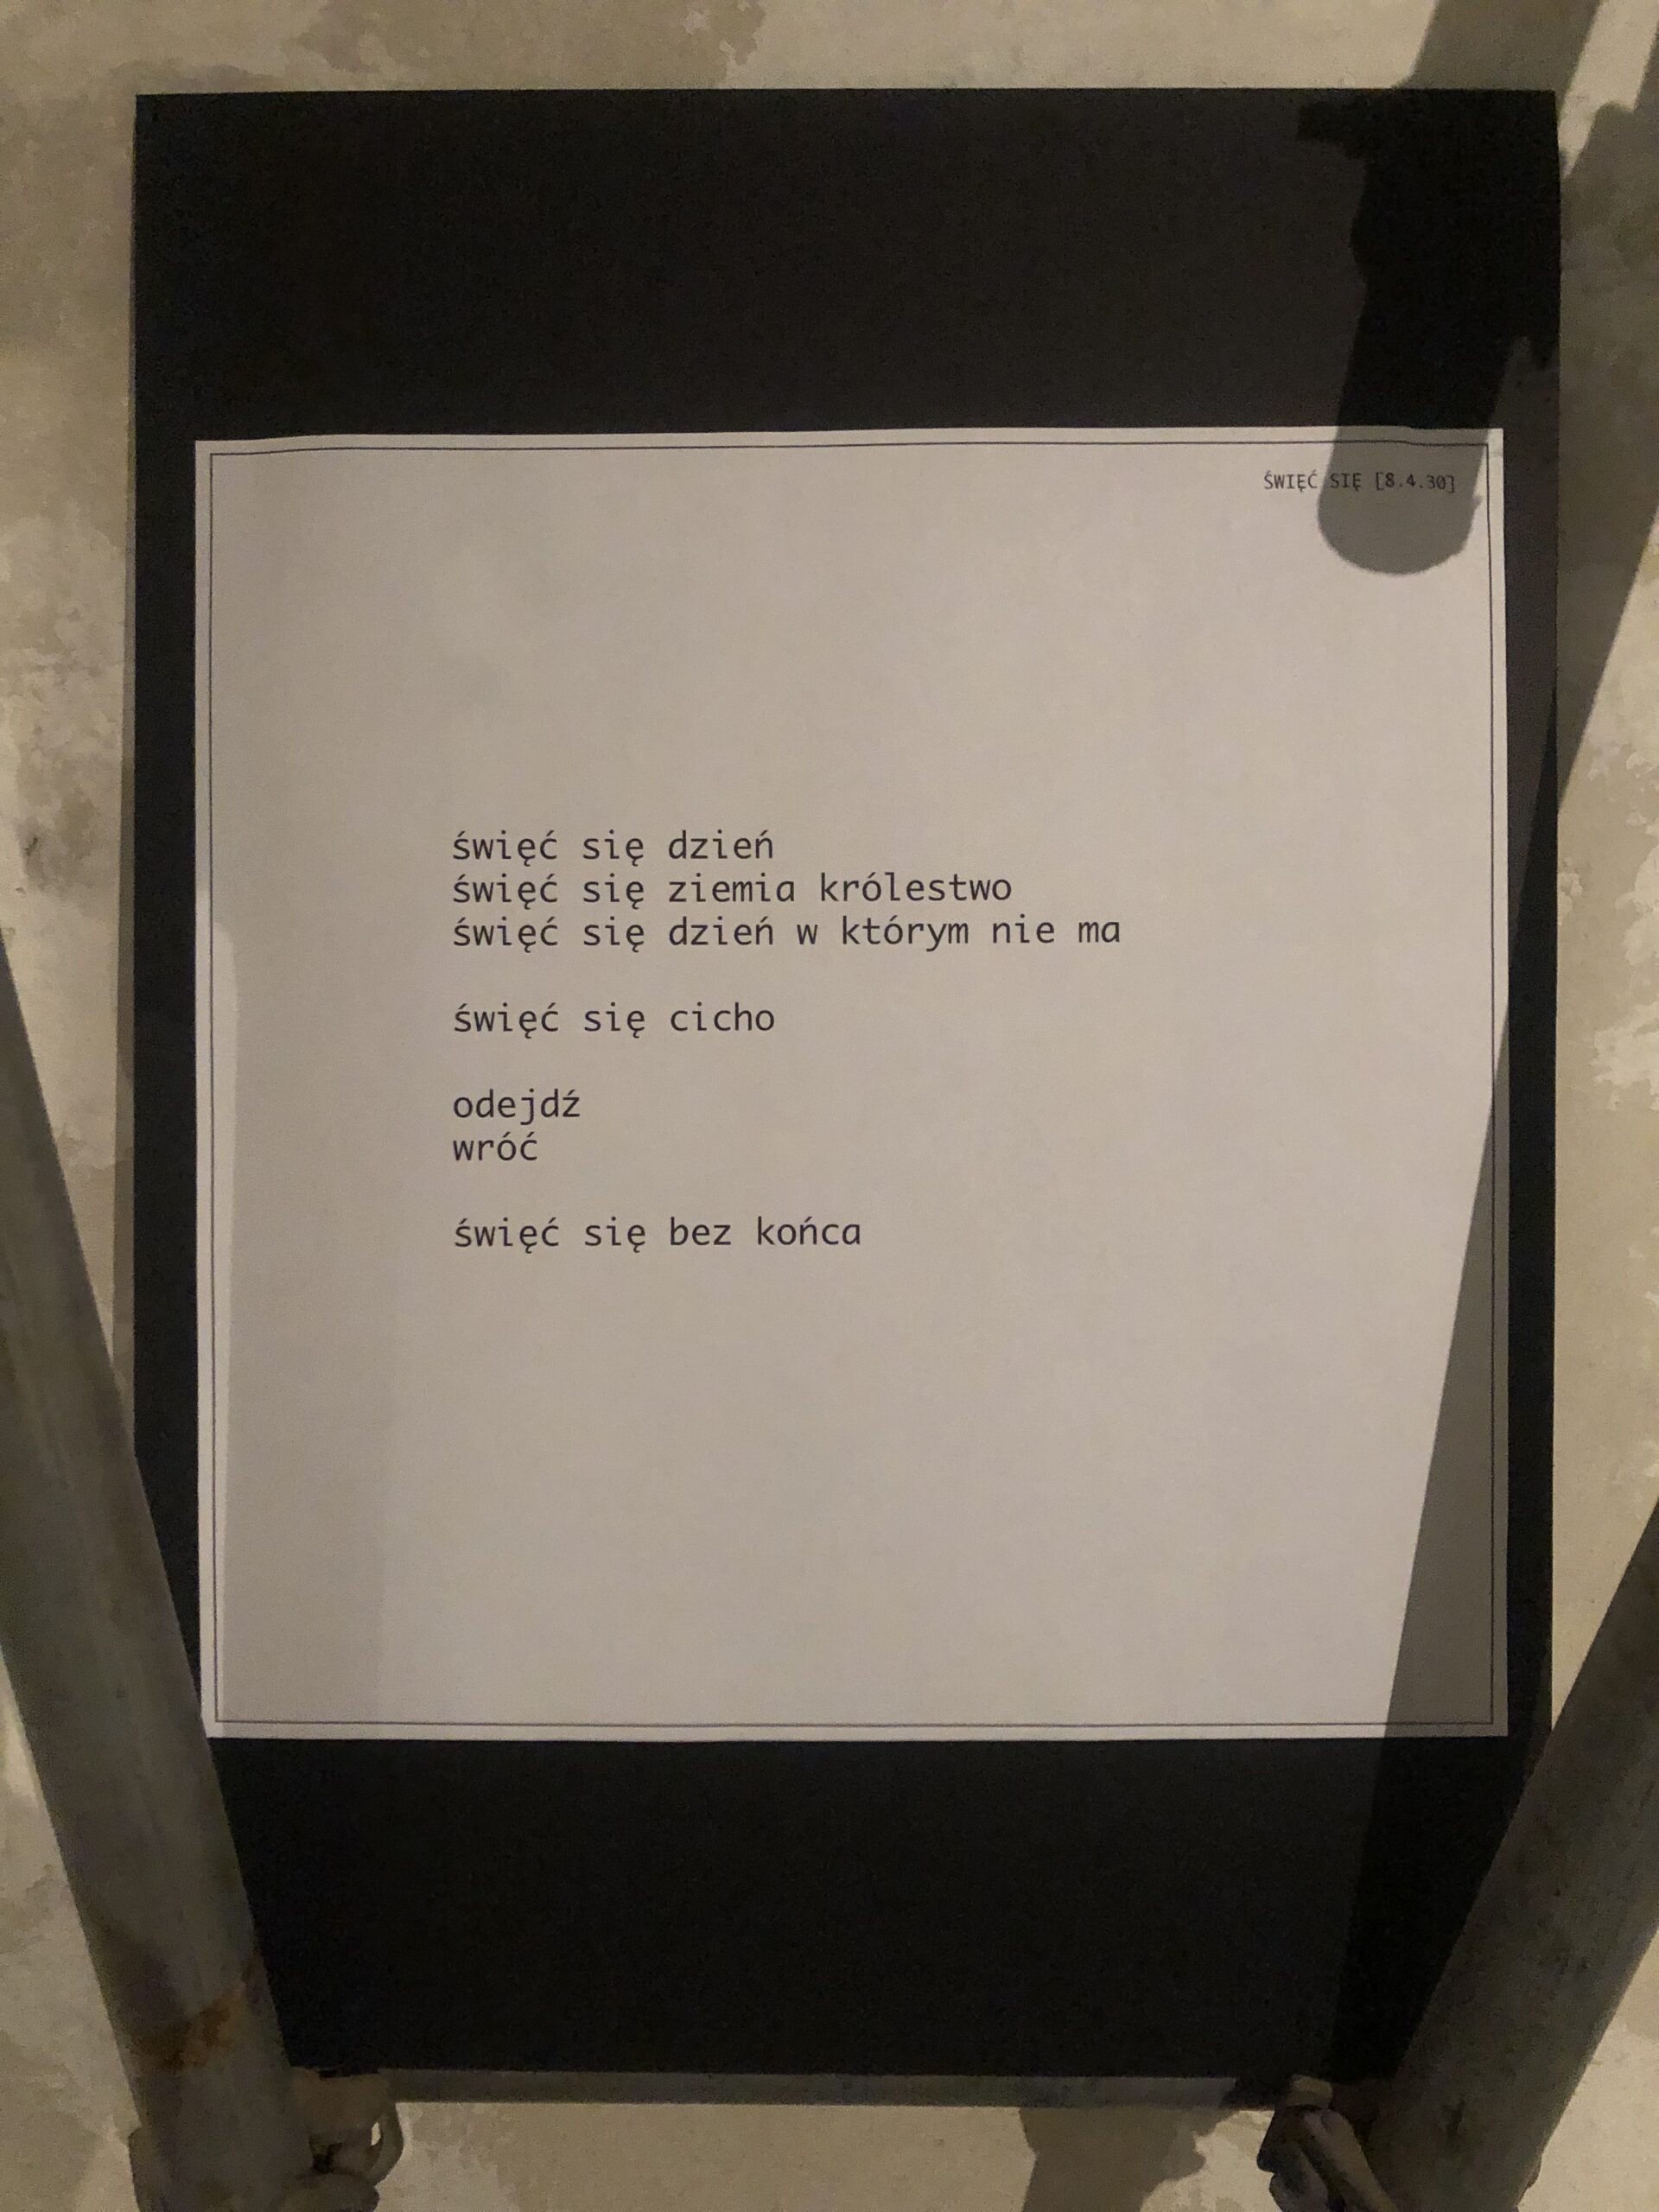 Wiersze z Wystawy (03) ⌖ ❡ [8.4.30](2) ° ŚWIĘĆ SIĘ